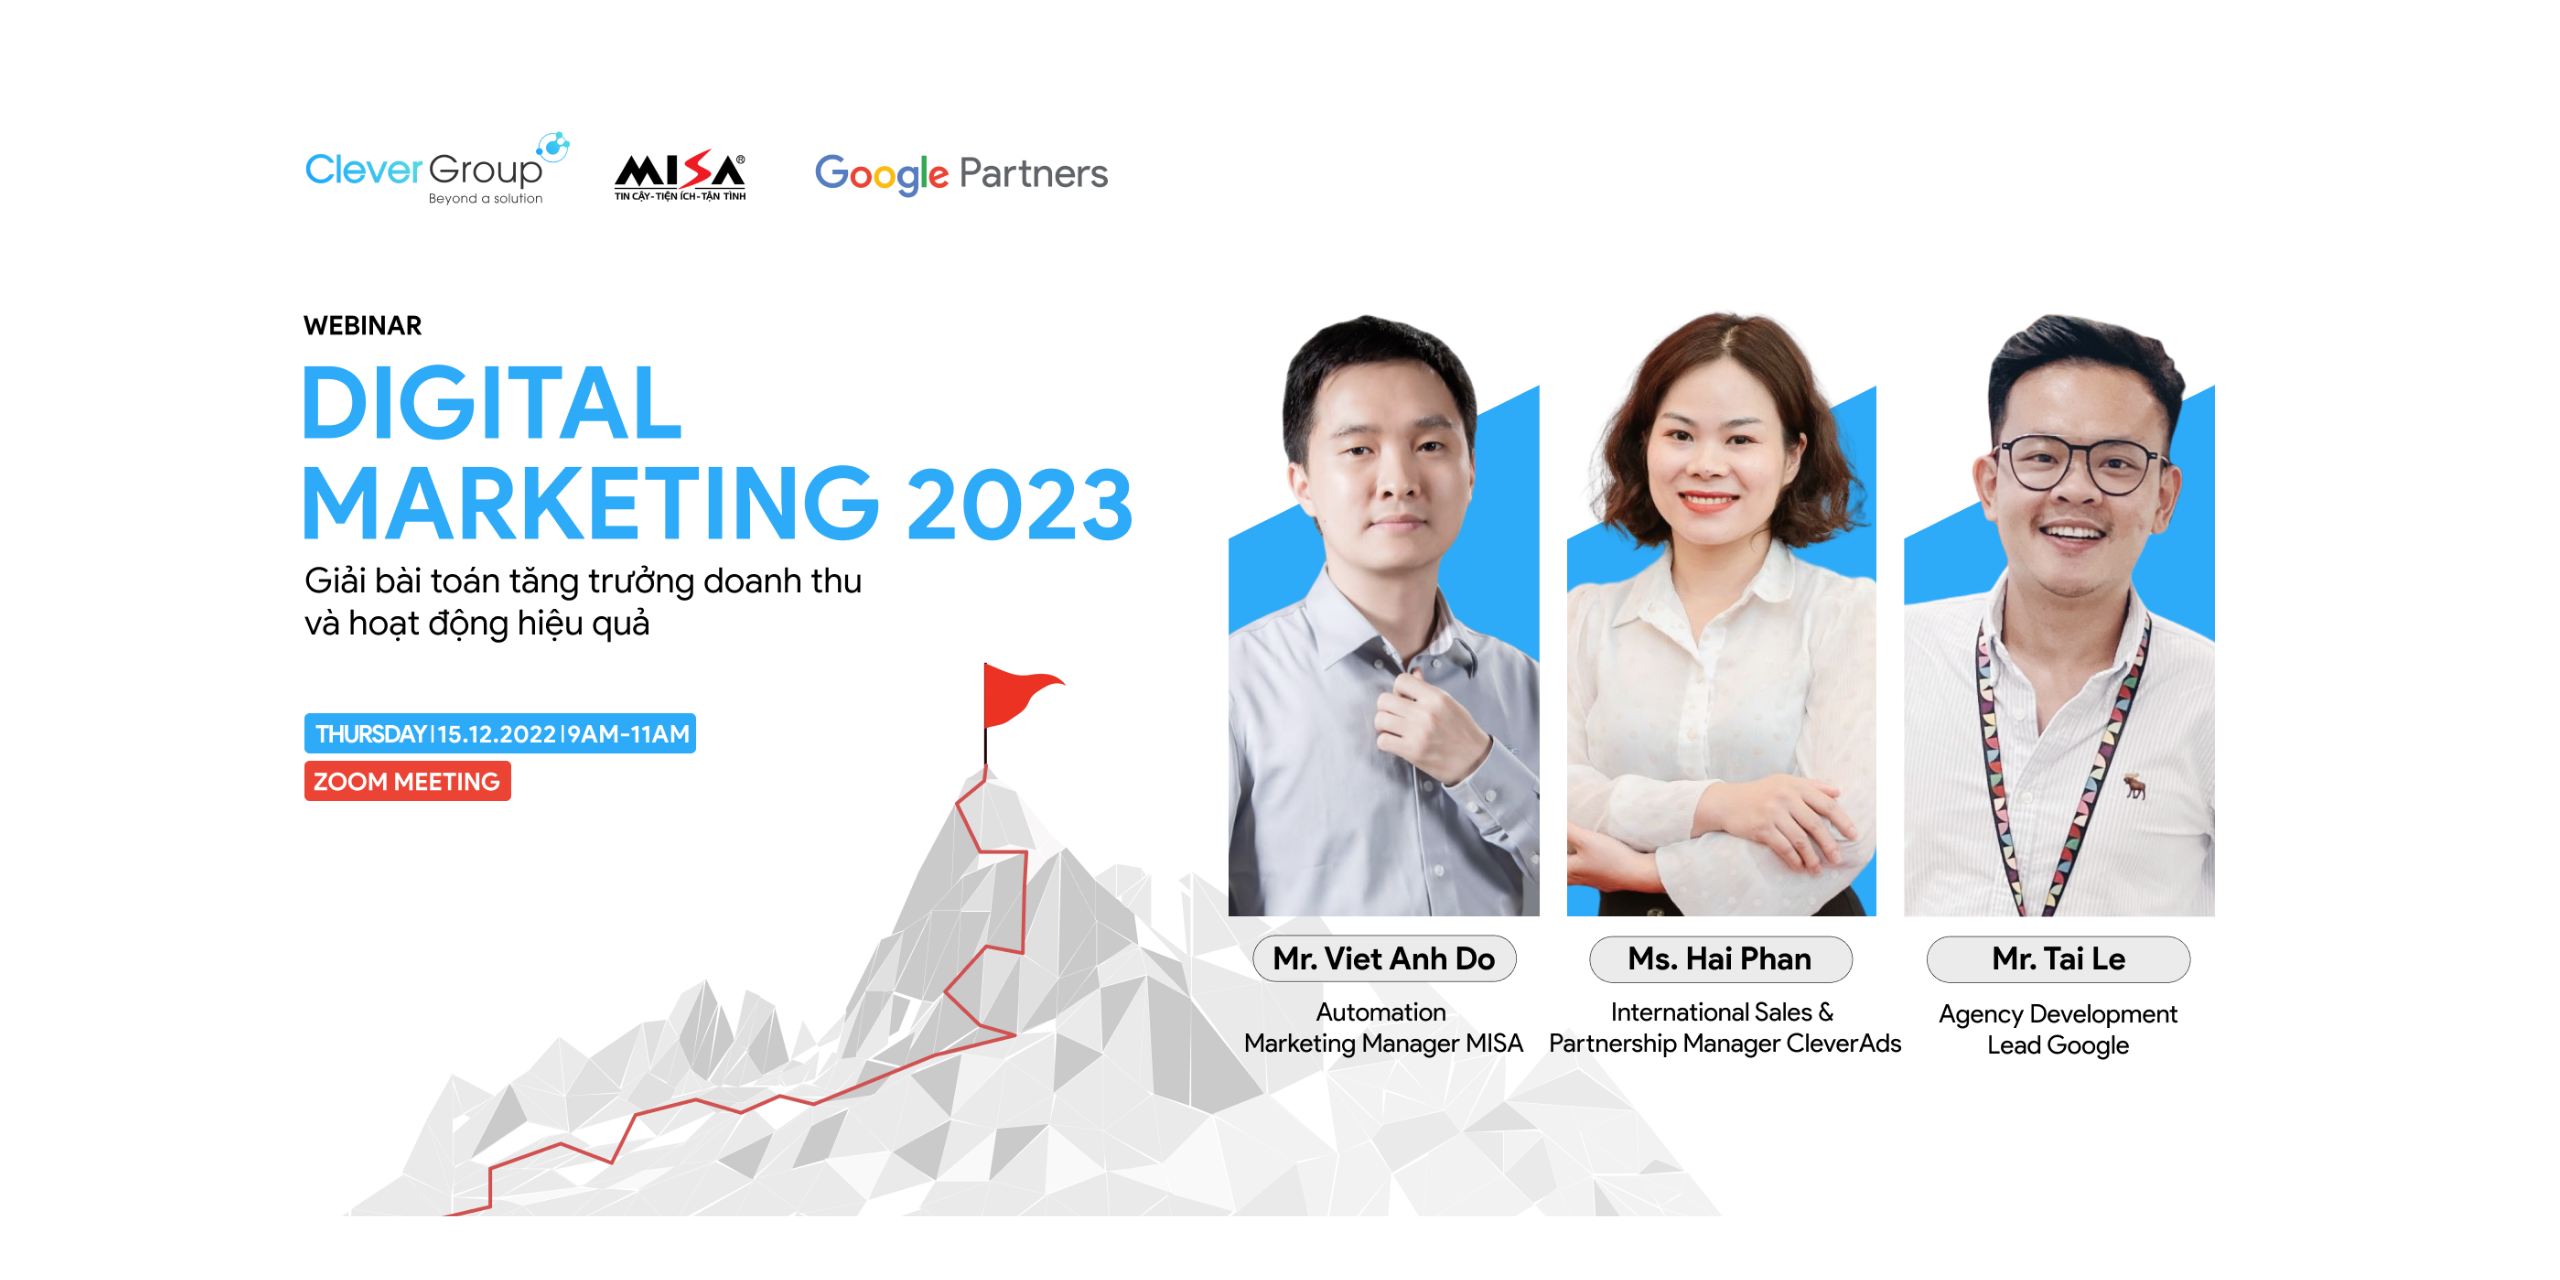 Webinar Digital Marketing 2023: Giải bài toán tăng trưởng doanh thu và hoạt động hiệu quả”